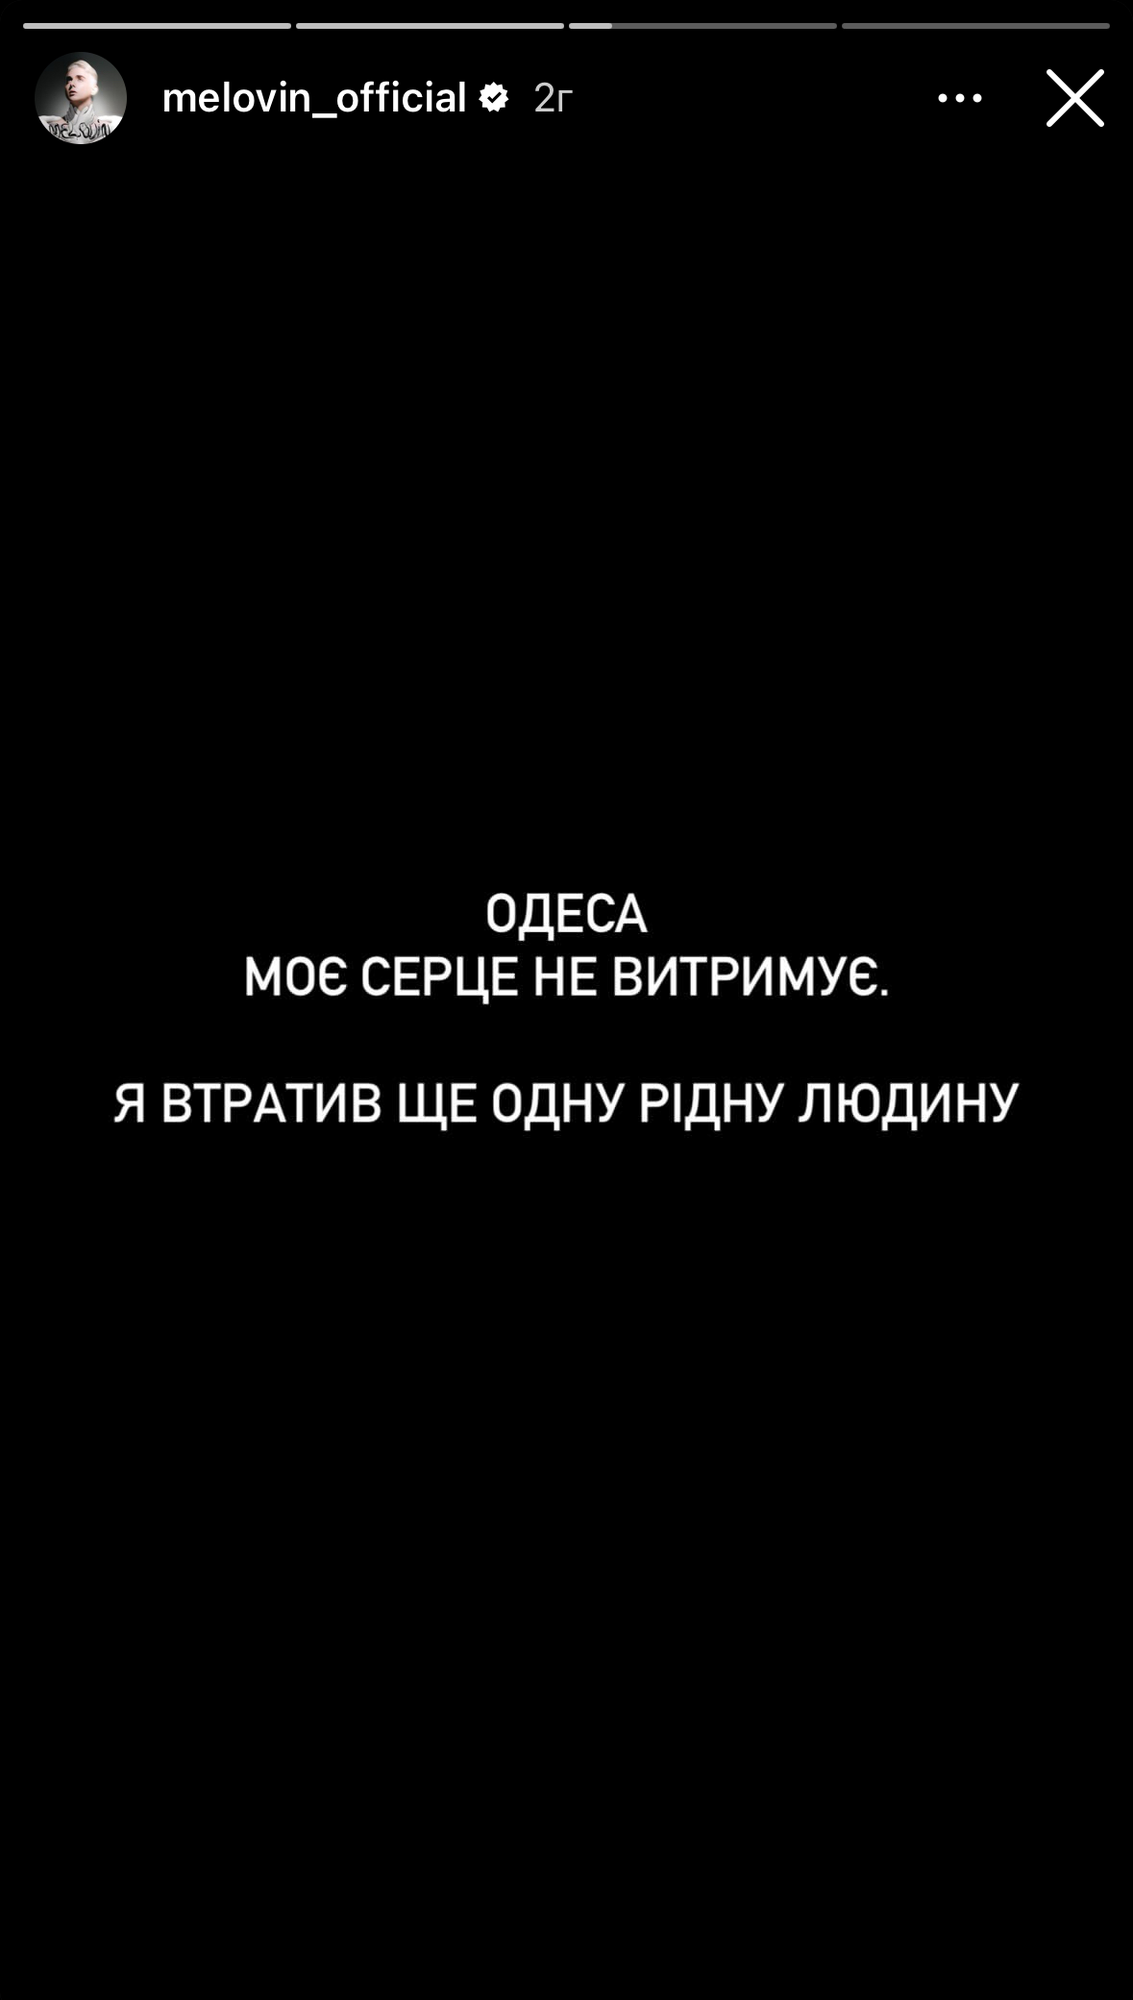 "Мое сердце не выдерживает": во время ракетной атаки Одессы погиб близкий человек MÉLOVIN